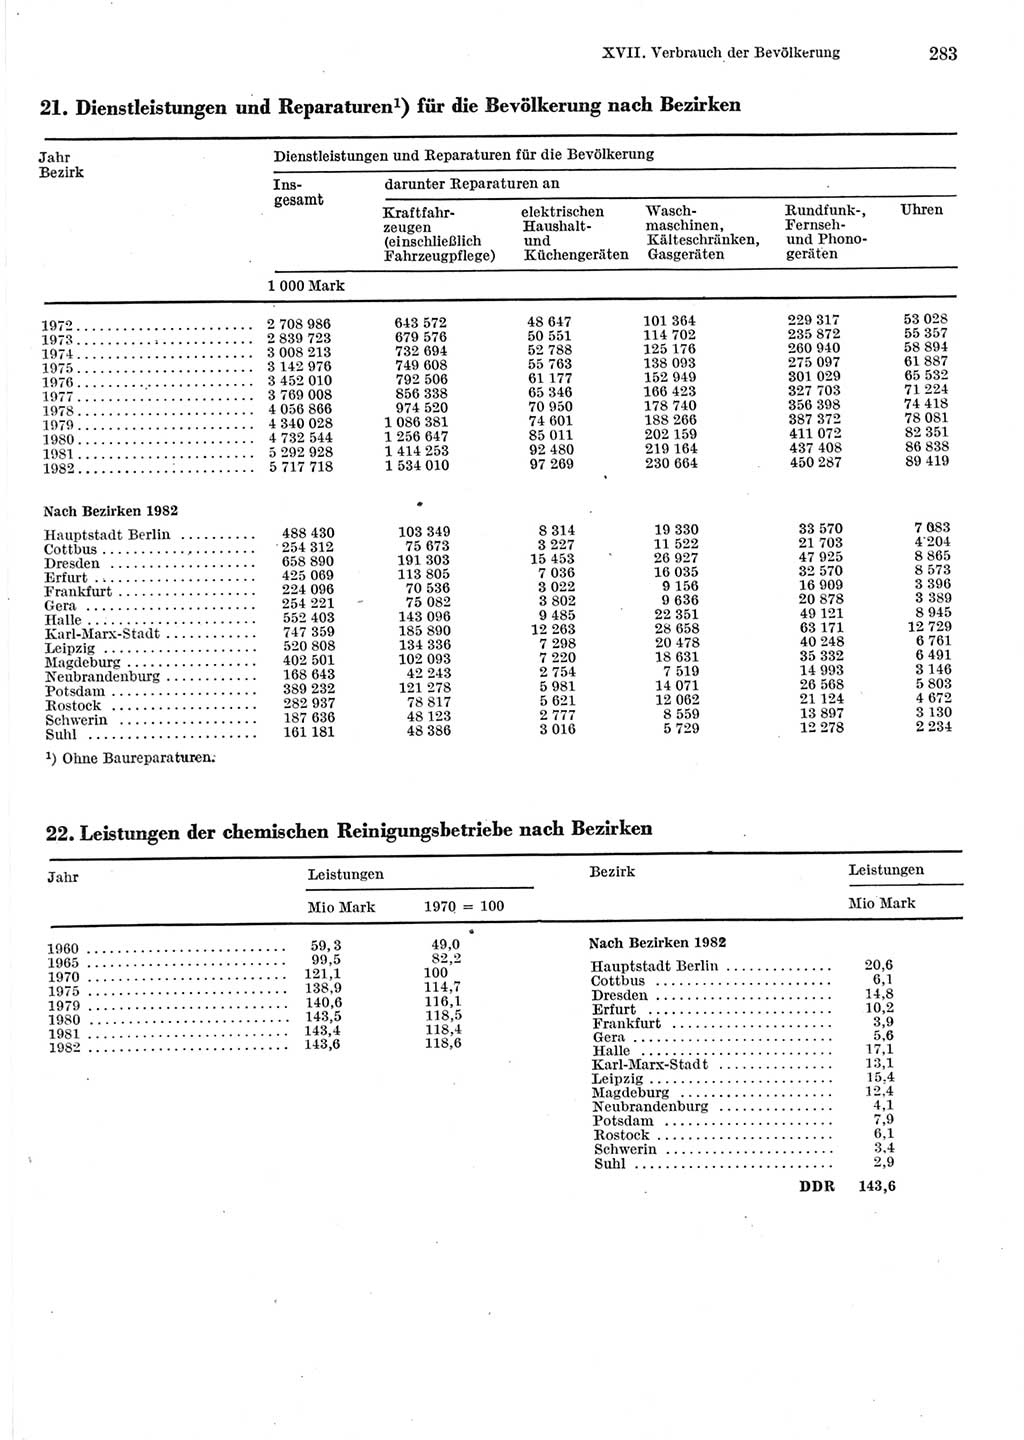 Statistisches Jahrbuch der Deutschen Demokratischen Republik (DDR) 1983, Seite 283 (Stat. Jb. DDR 1983, S. 283)